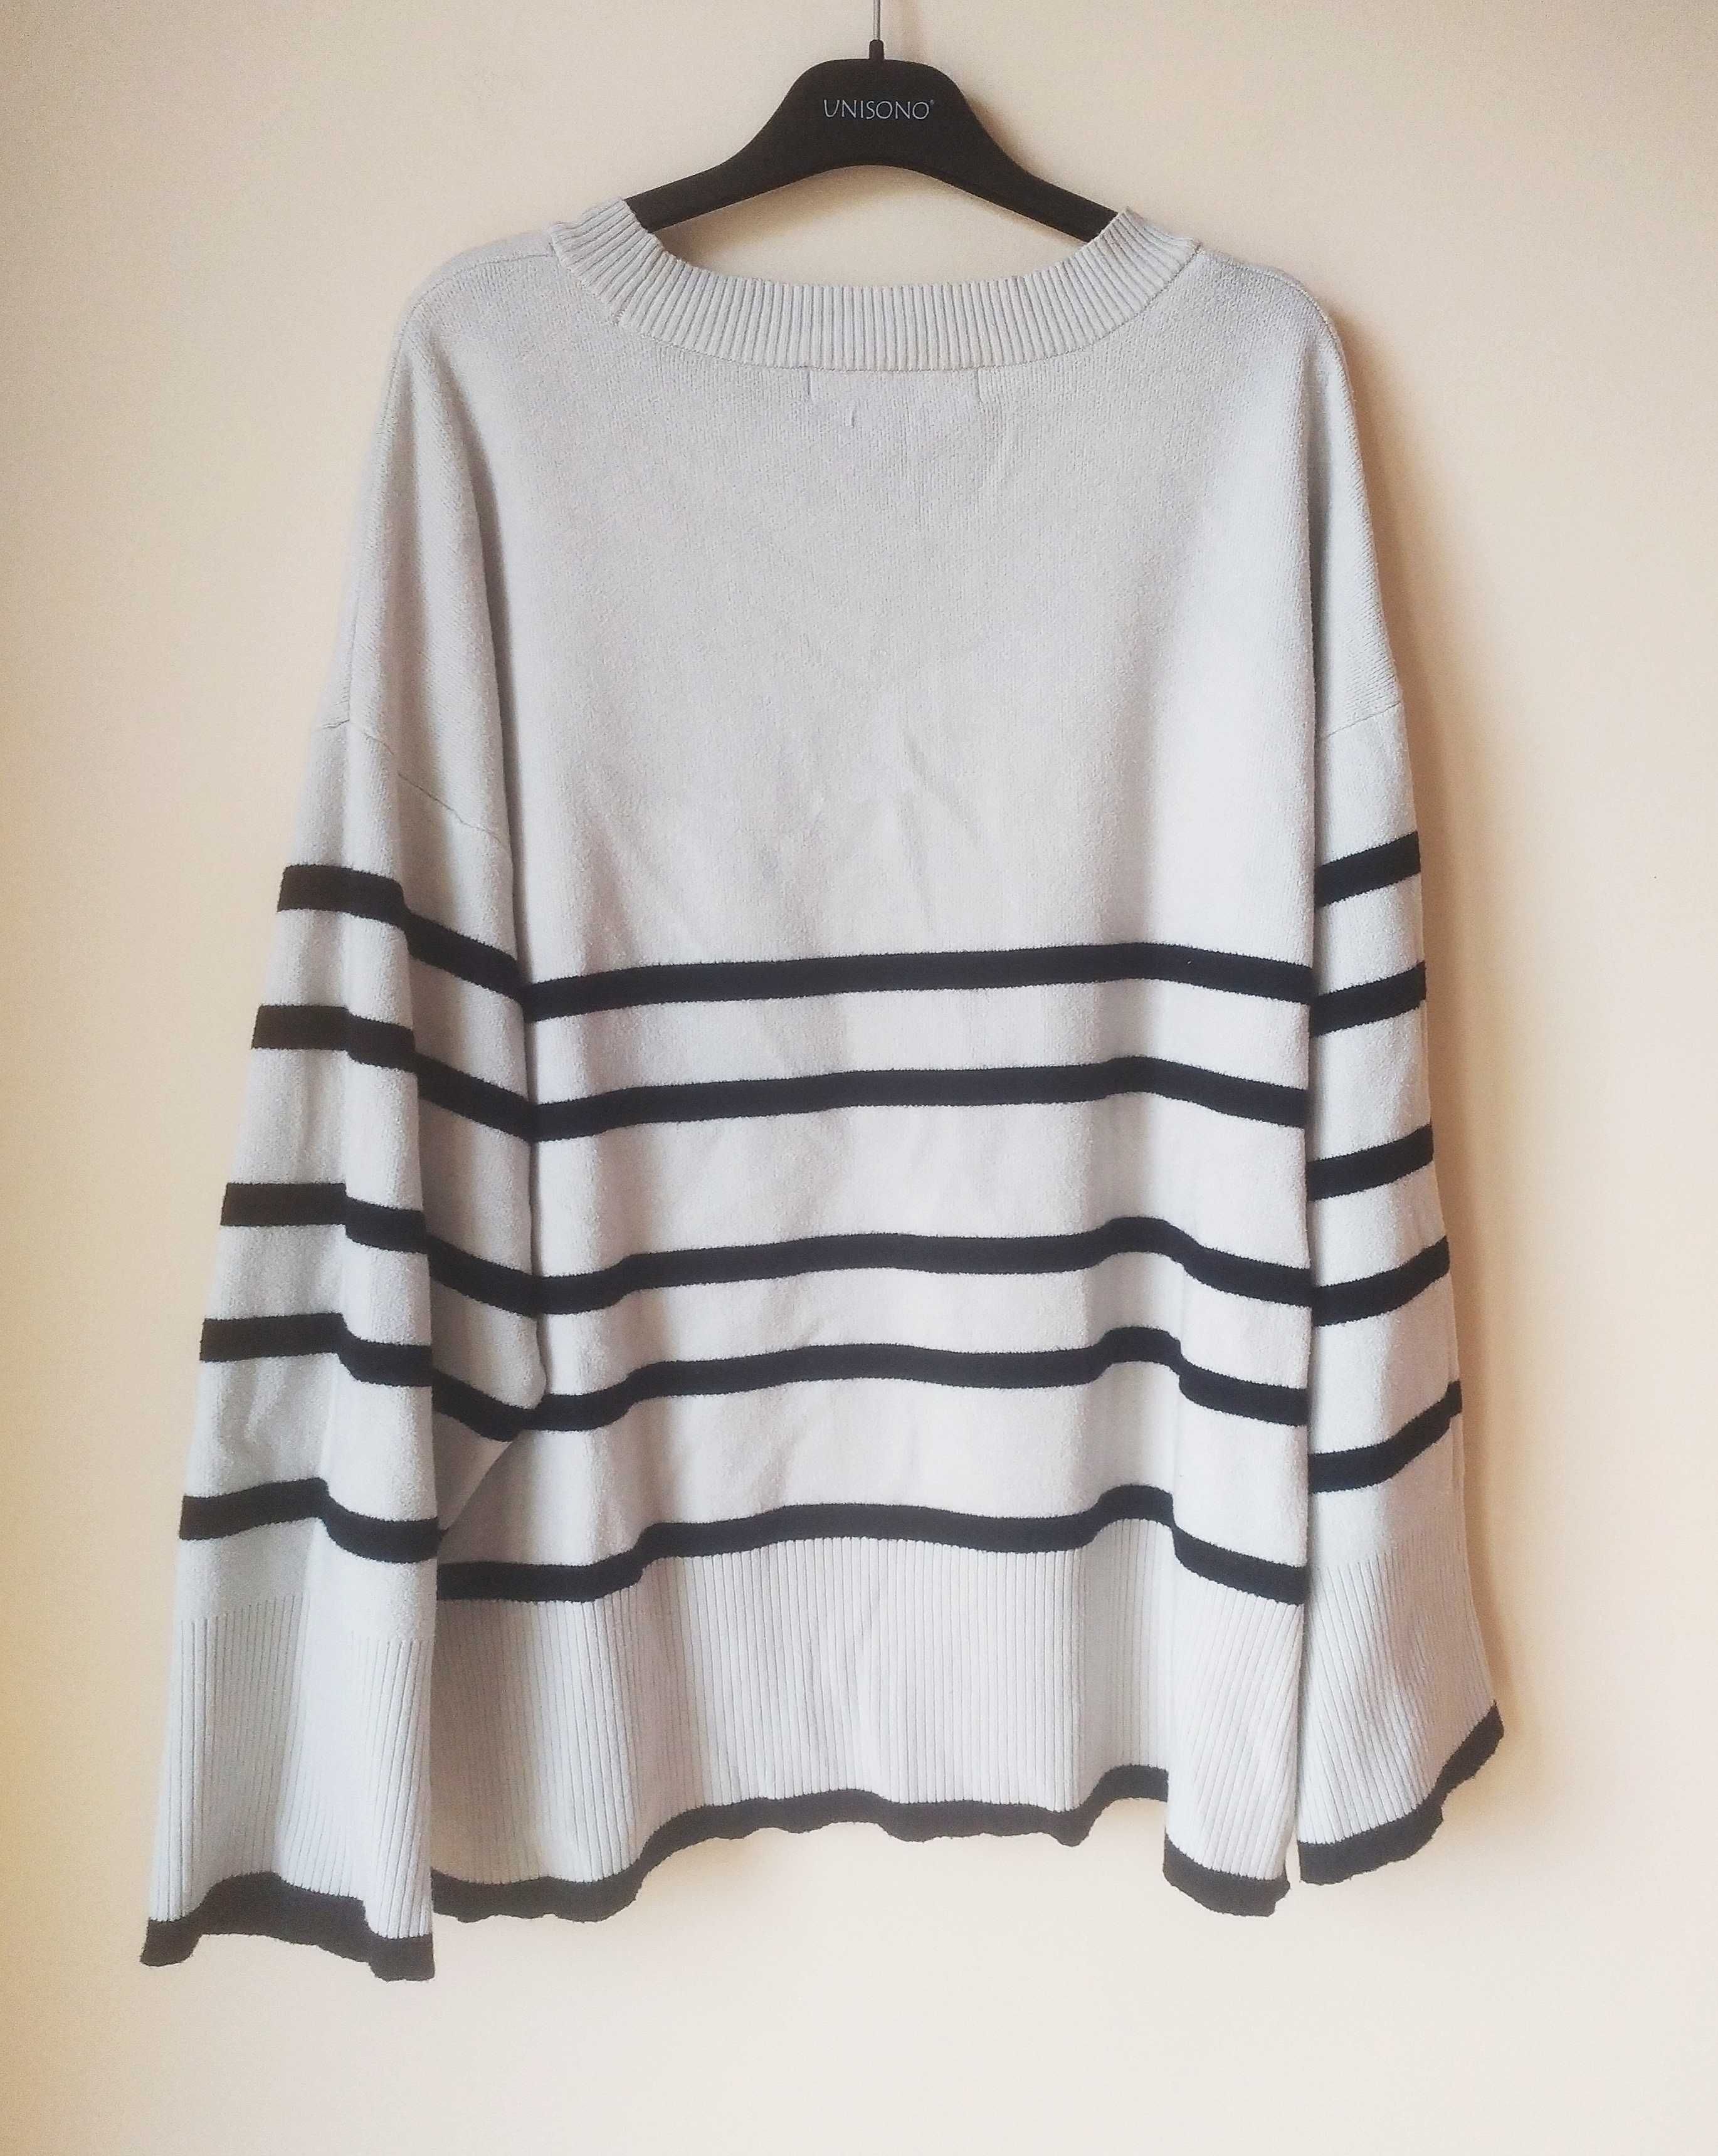 Kremowy sweter w paski z szerokimi rękawami, Vero Moda, rozmiar XL